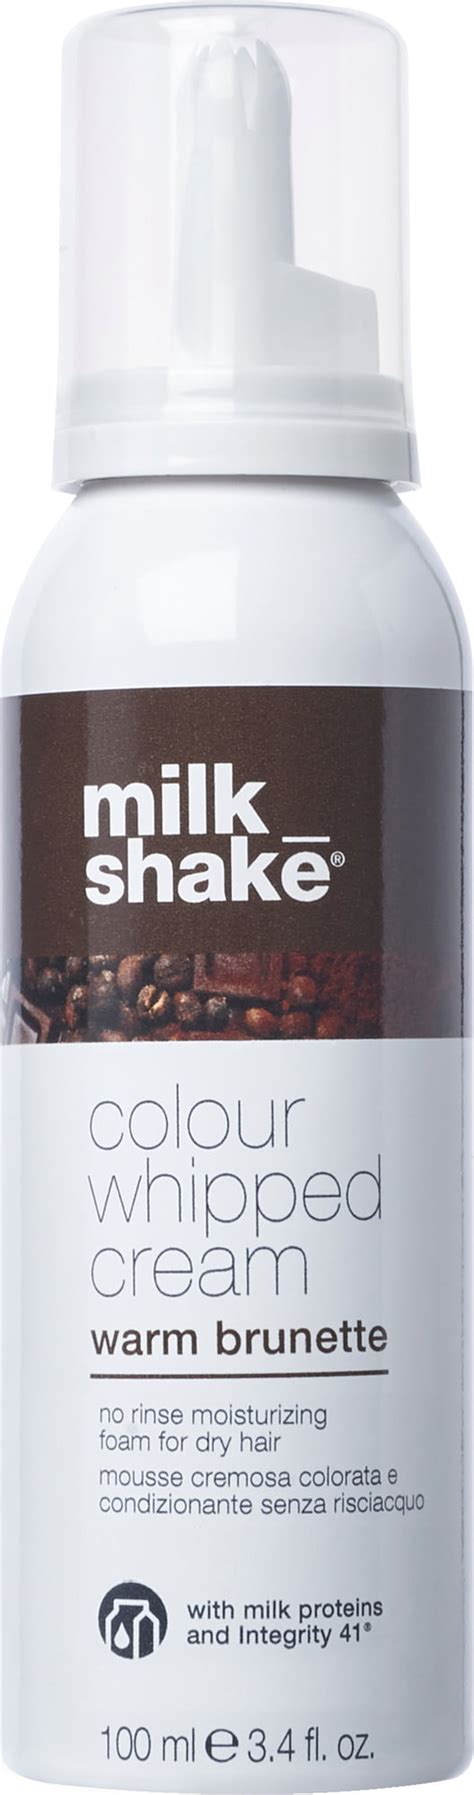 Milk Shake Colour Whipped Cream Warm Brunette 100 Ml Labelhair